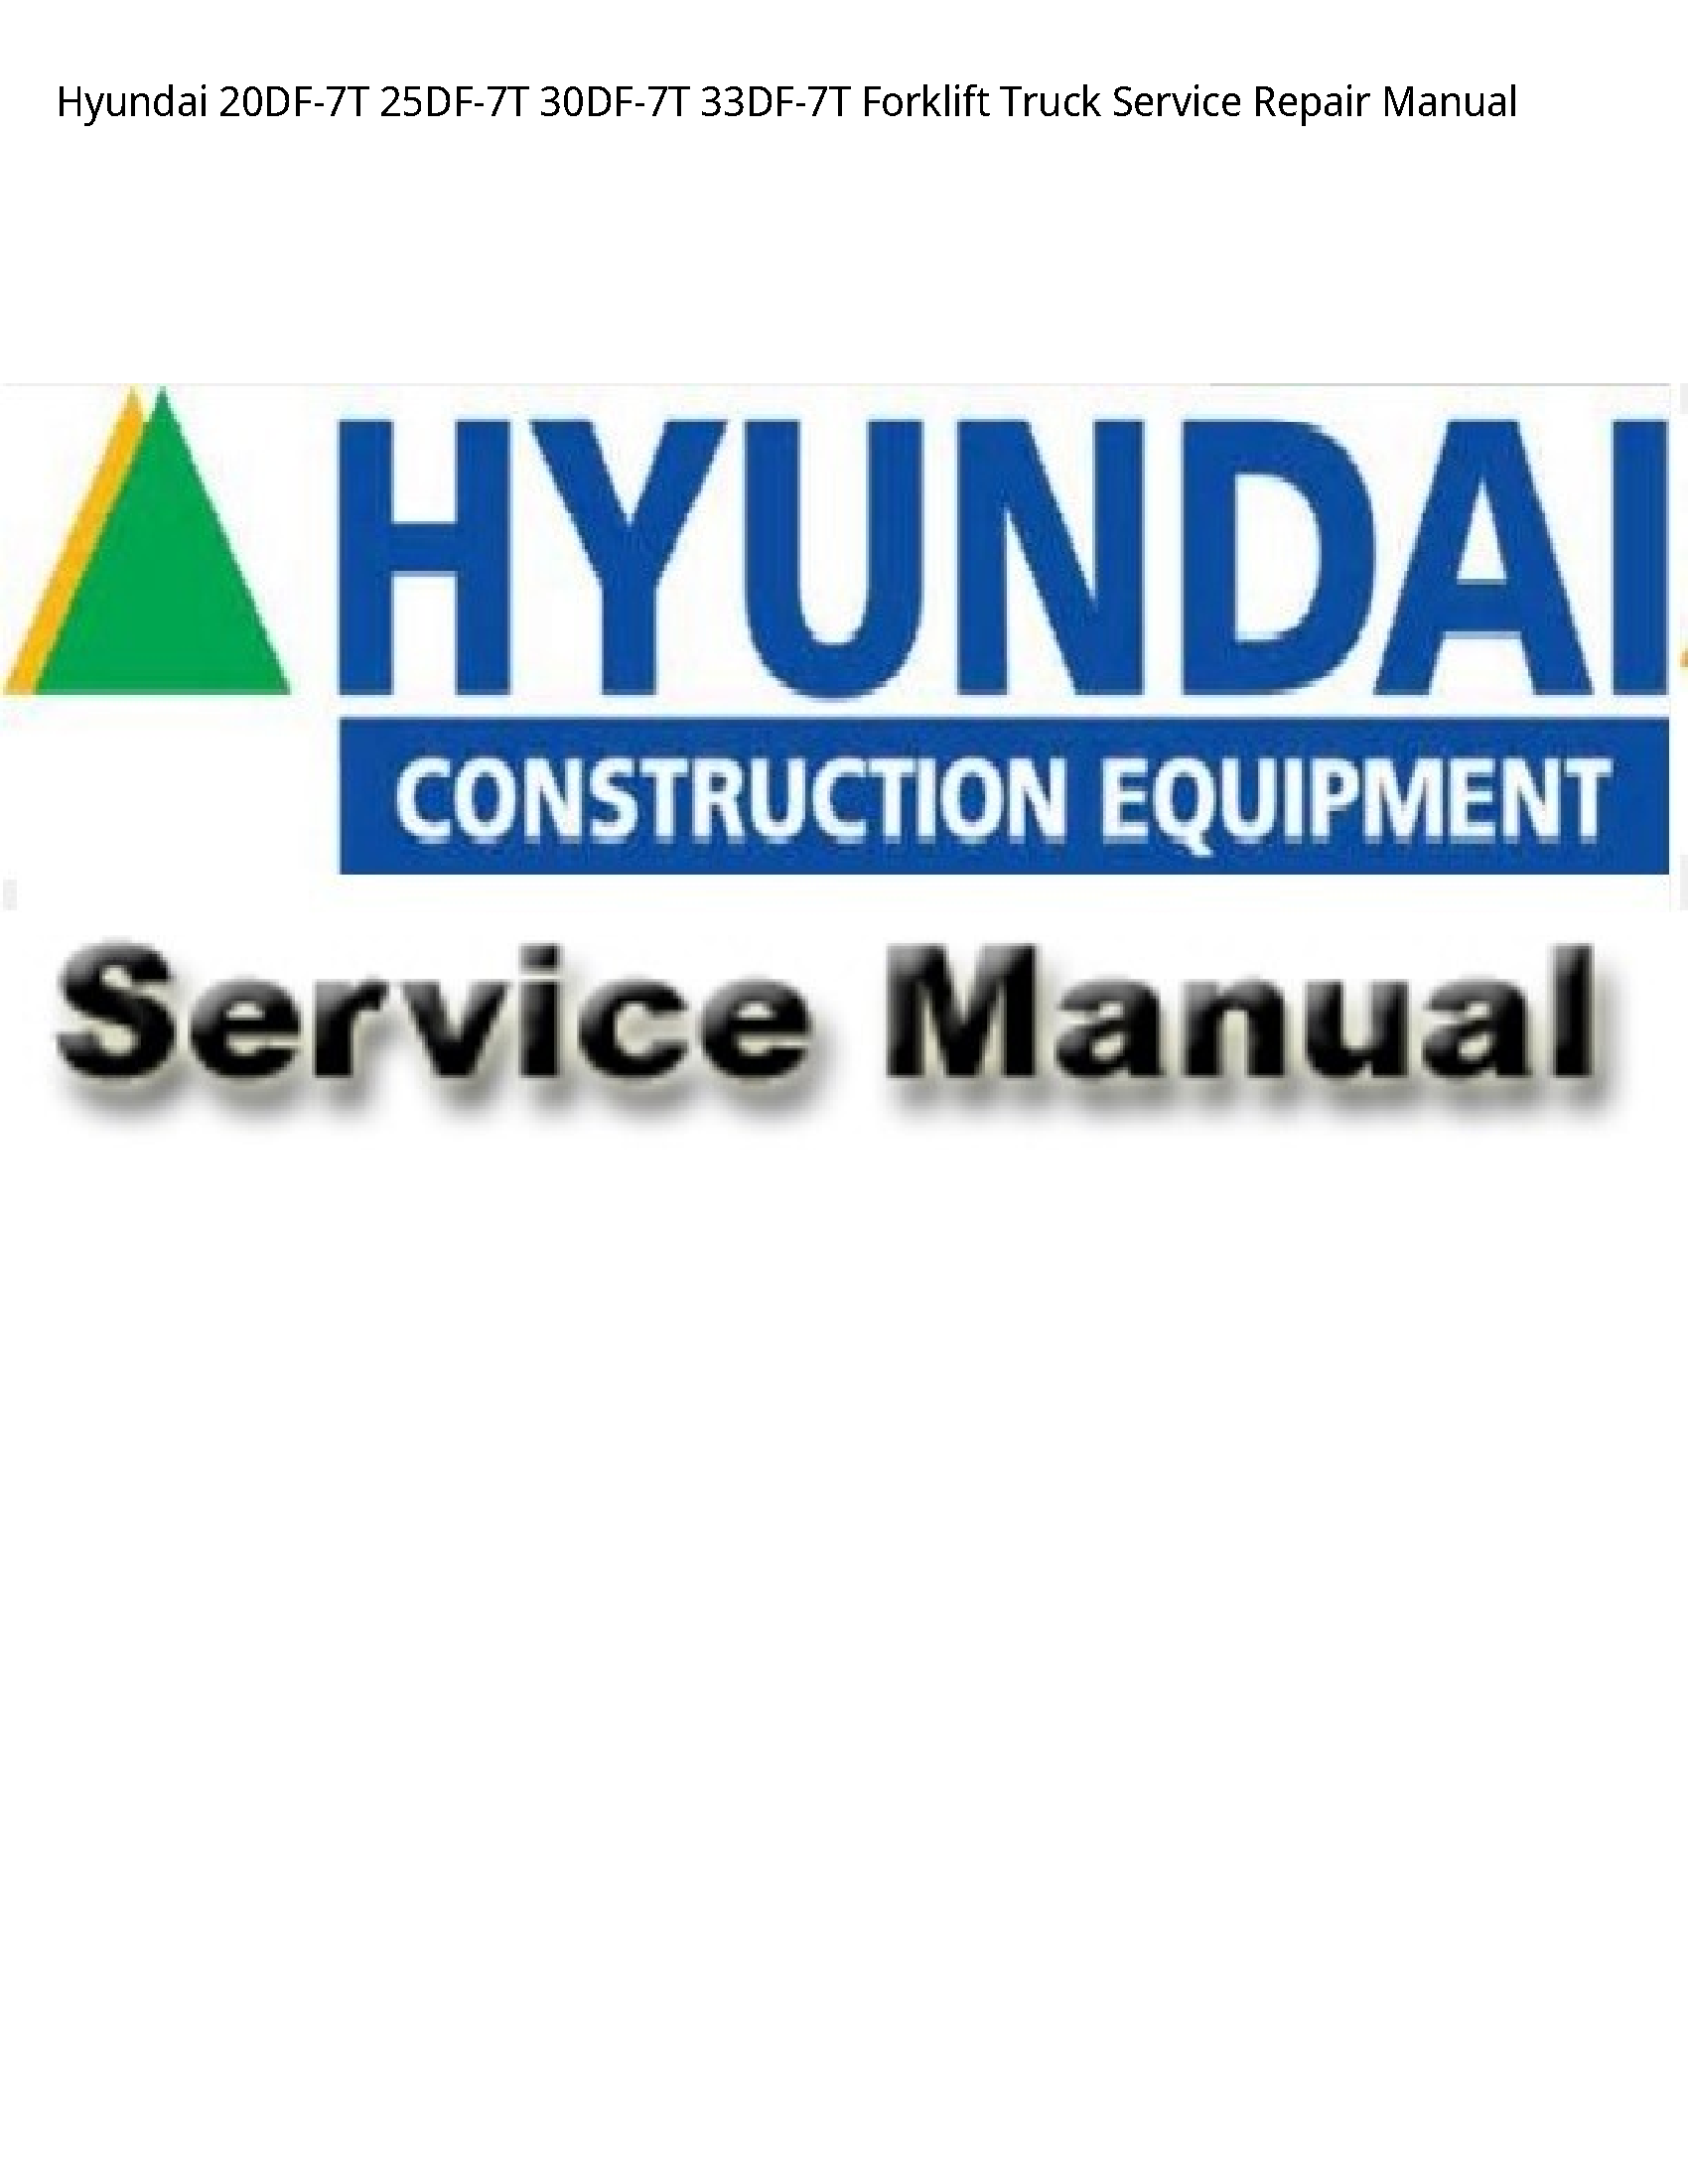 Hyundai 20DF-7T Forklift Truck manual